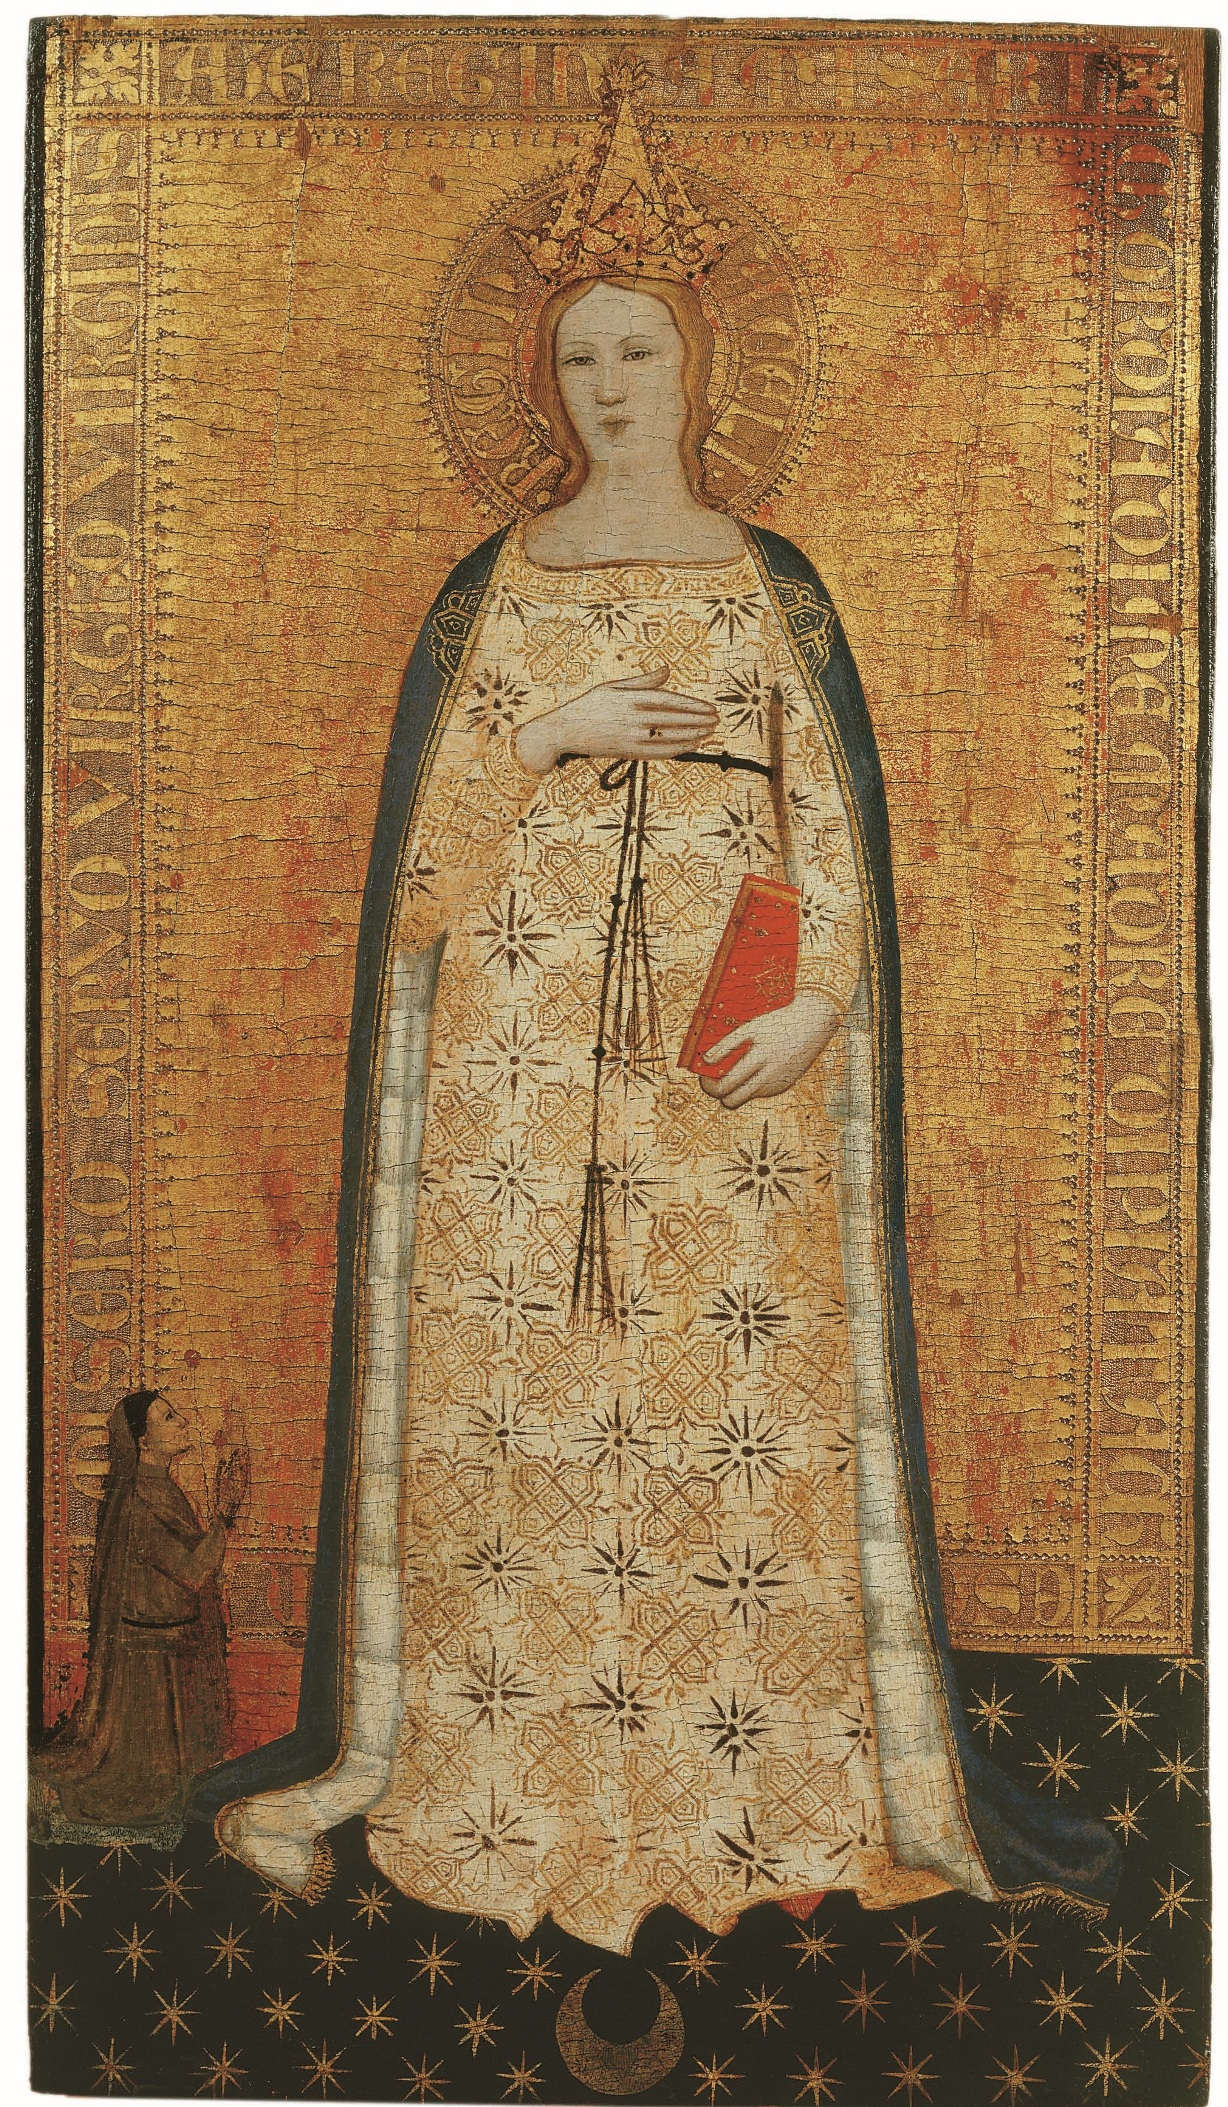 Nardo di Cione, Madonna del Parto e donatore (c. 1350; tempera on panel, 54 x 30 cm; Fiesole, Bandini Museum)